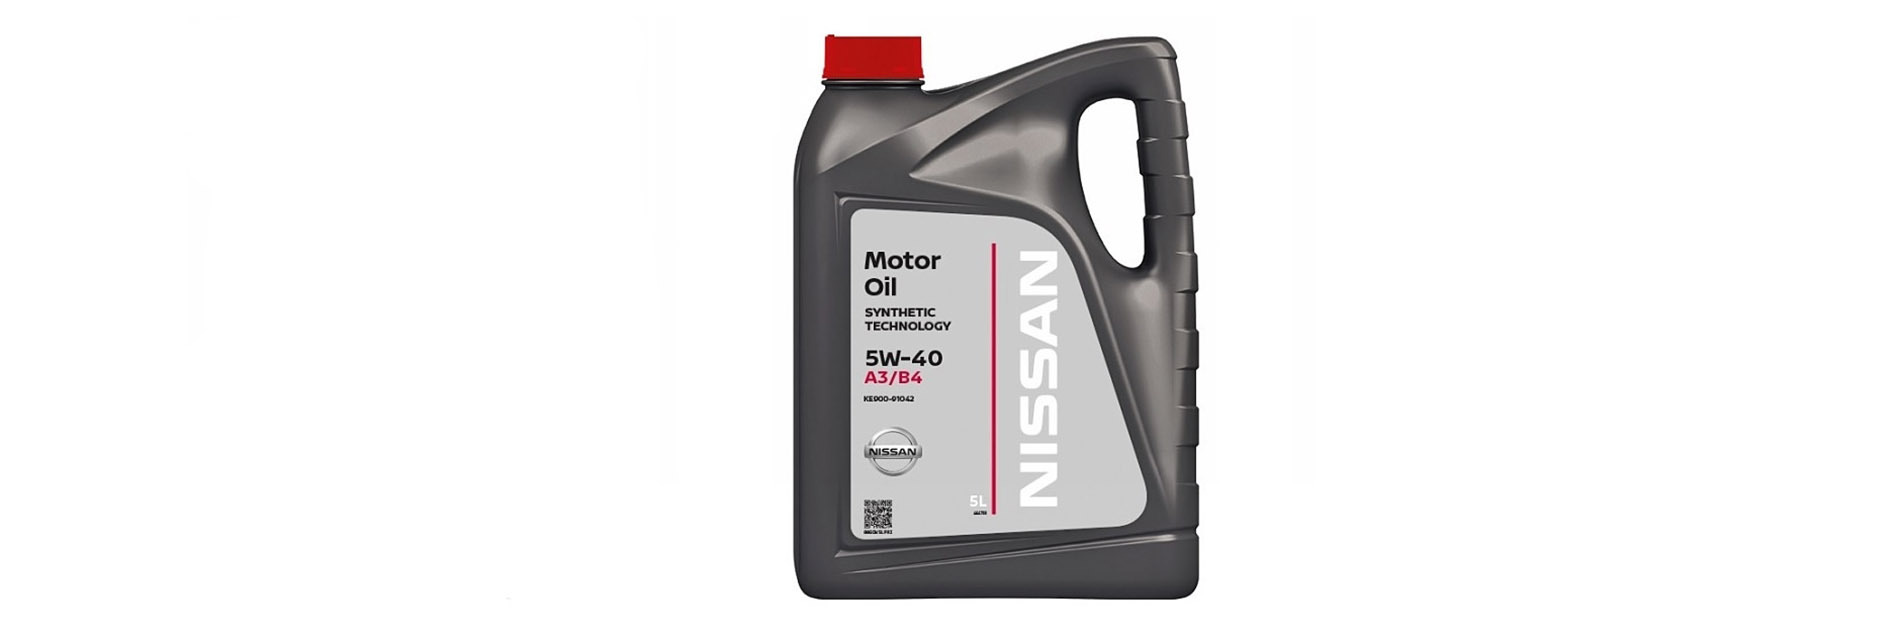 Компания Nissan защитит своих клиентов от поддельного моторного масла